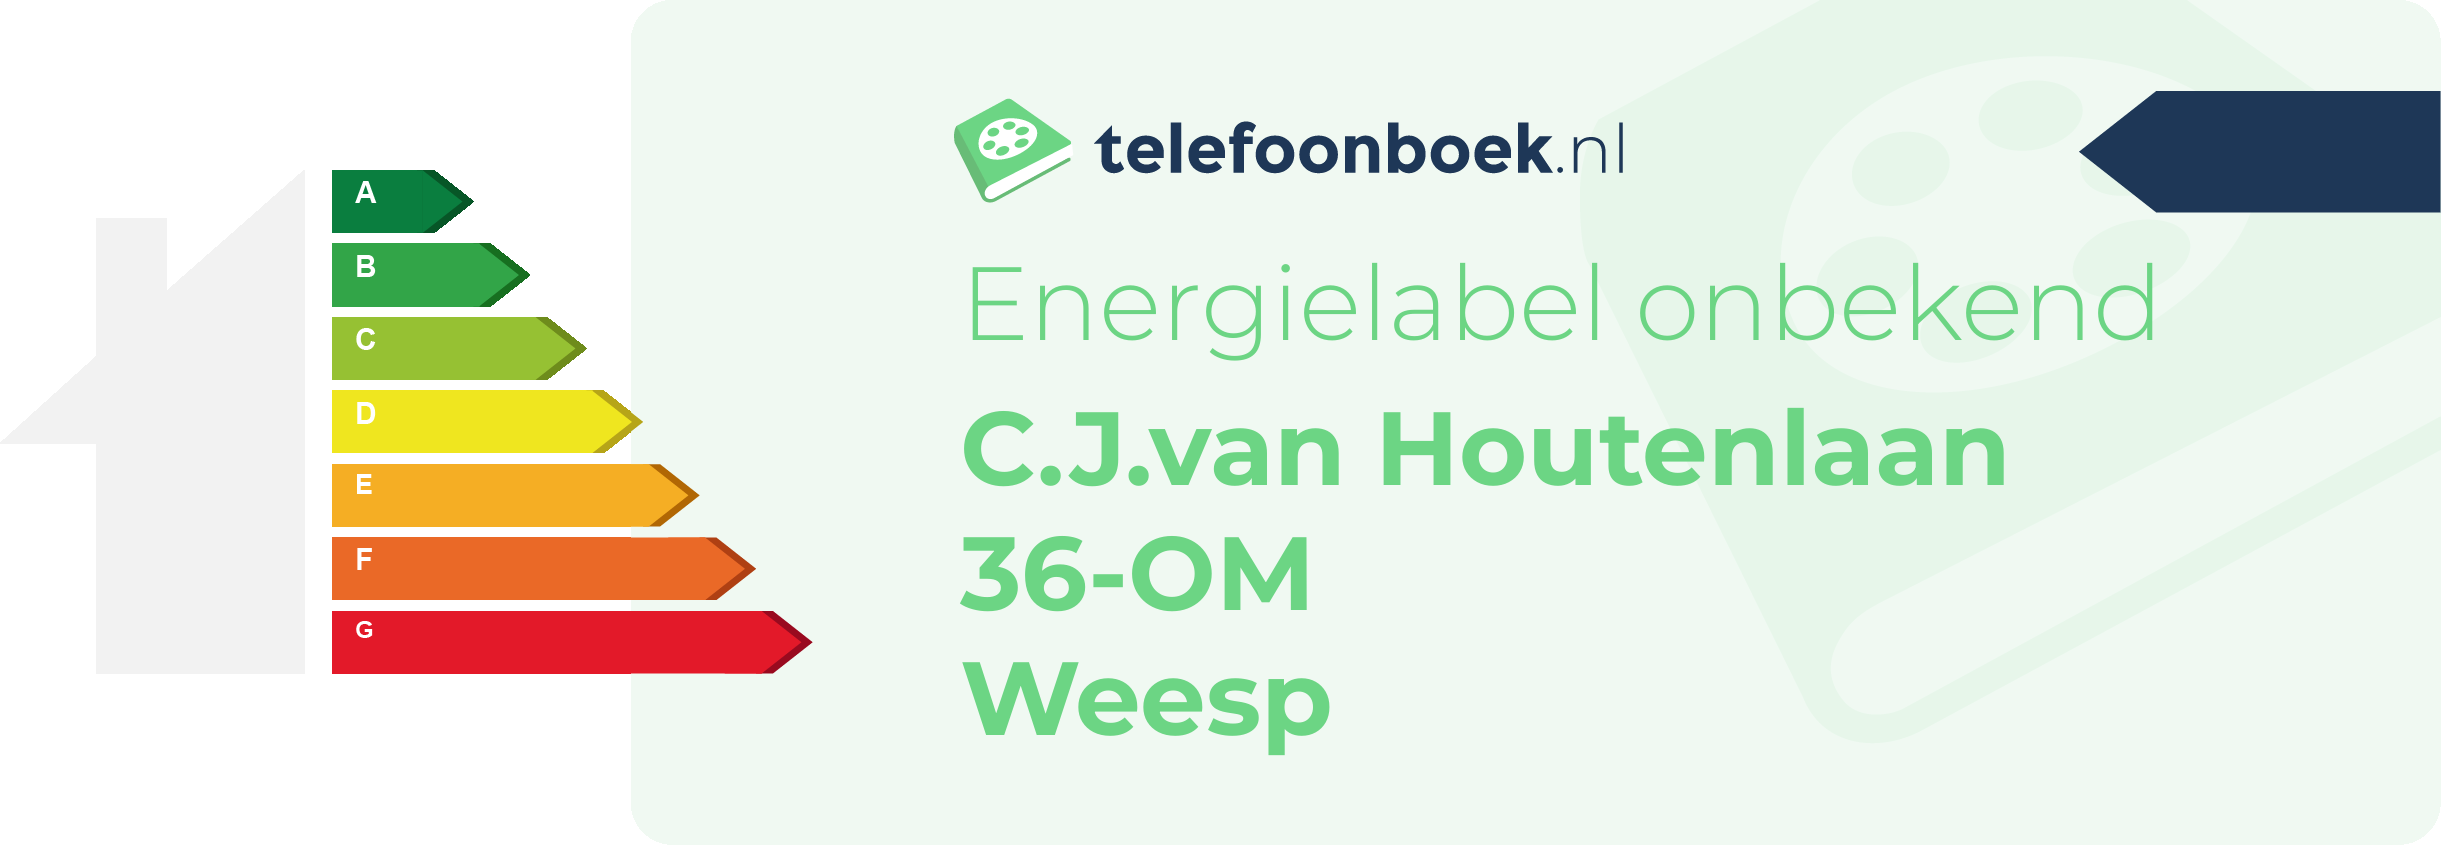 Energielabel C.J.van Houtenlaan 36-OM Weesp